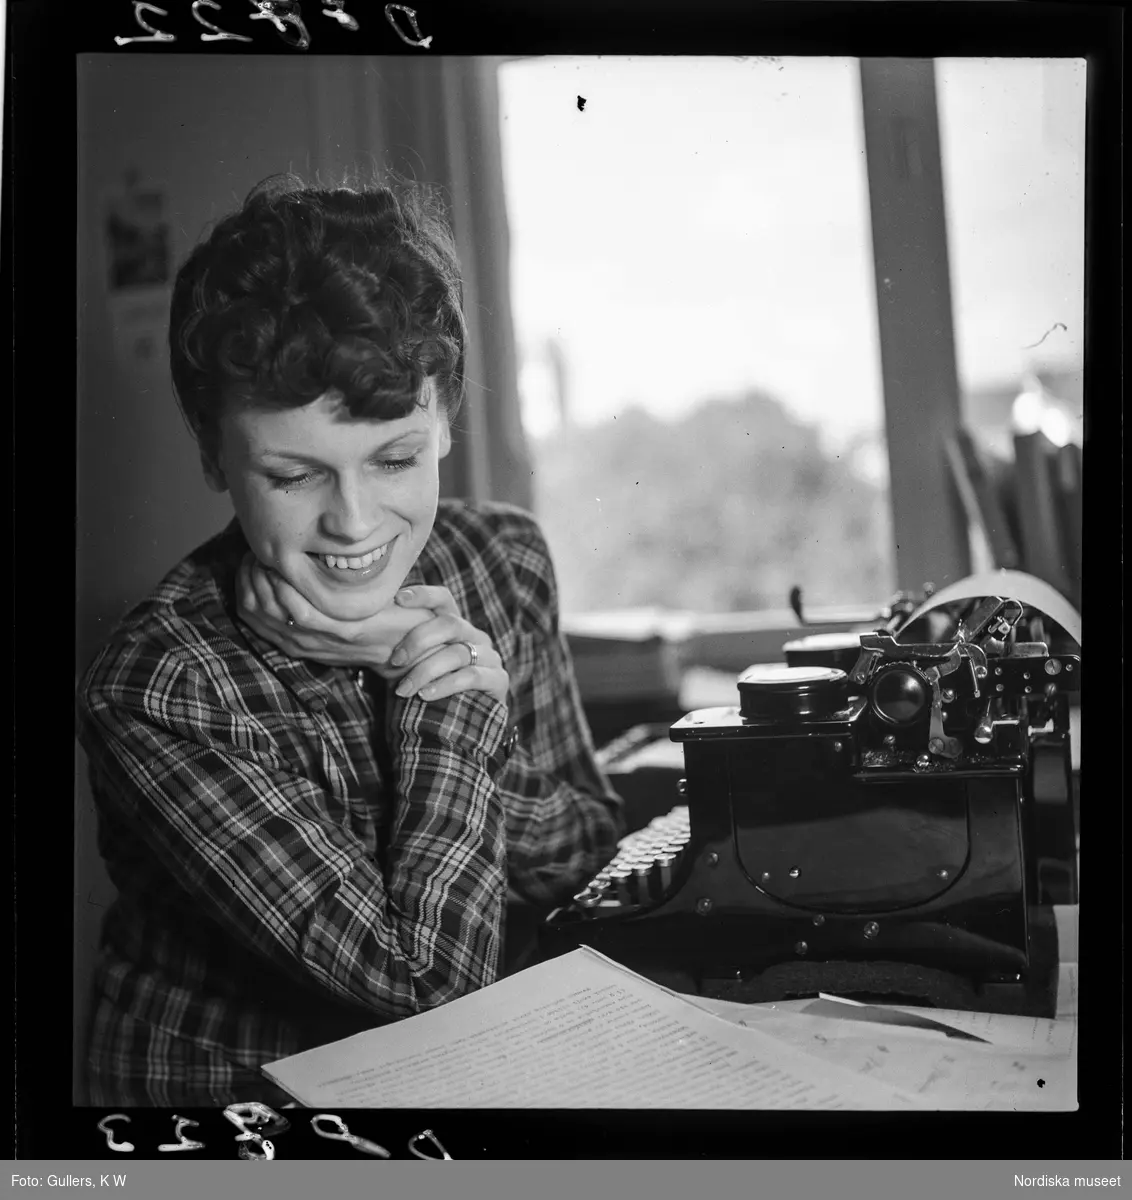 534 Polisskolan. En kvinna arbetar vid skrivmaskin.